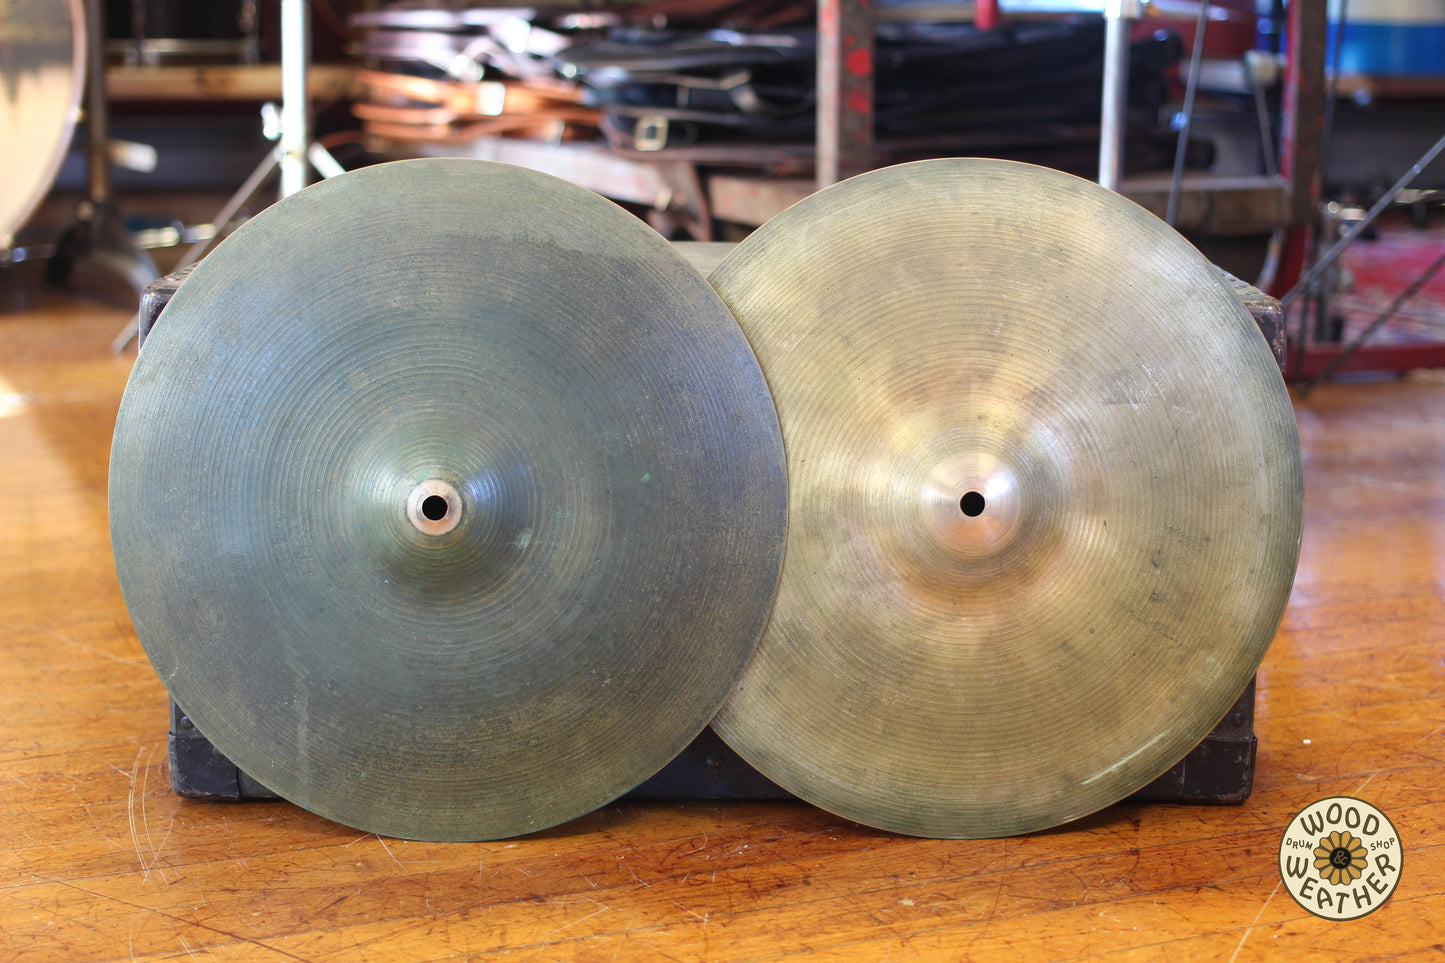 1960s A. Zildjian New Beat 14" Hi-Hat Cymbals 865/1170g